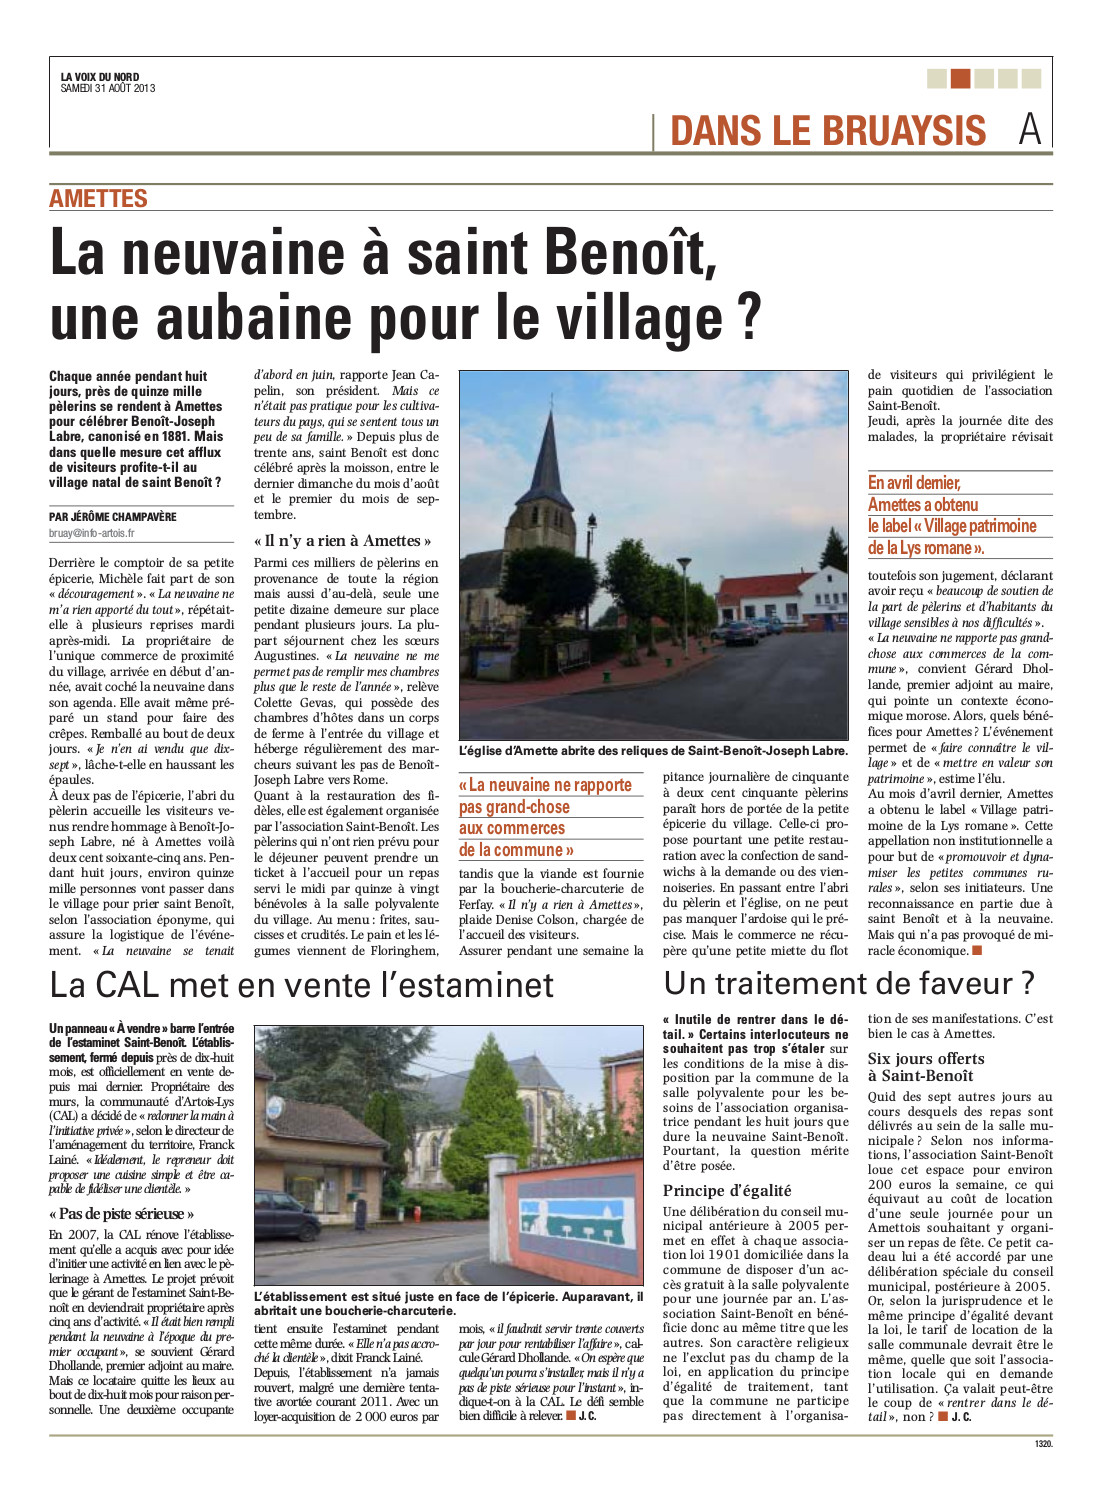 La neuvaine à Saint-Benoît, une aubaine pour le village